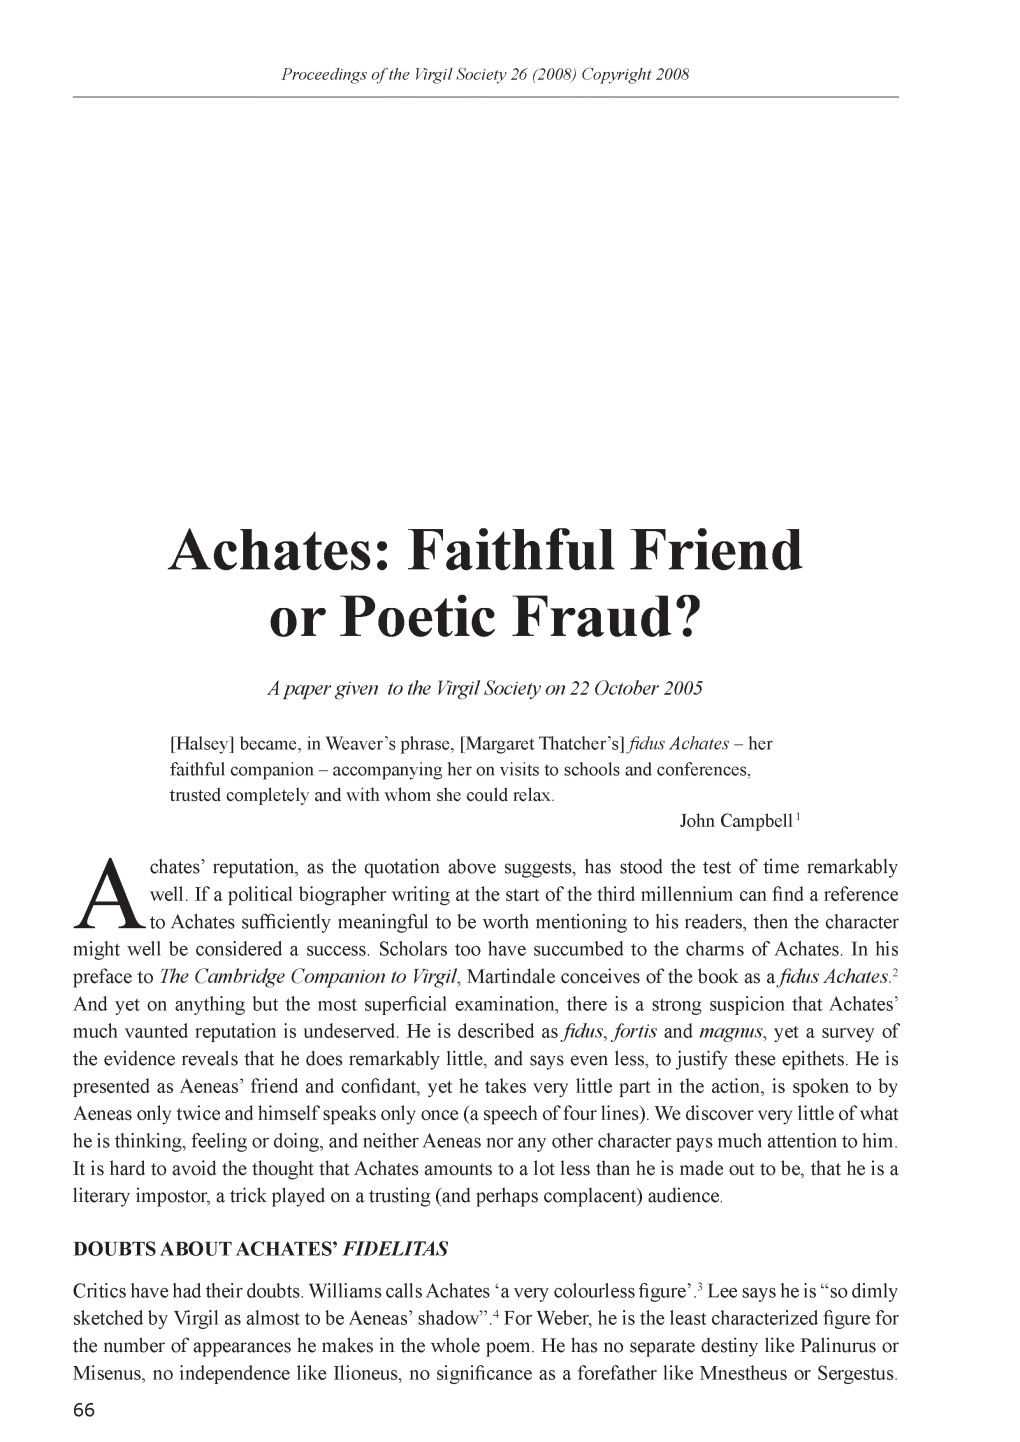 Achates: Faithful Friend Or Poetic Fraud?